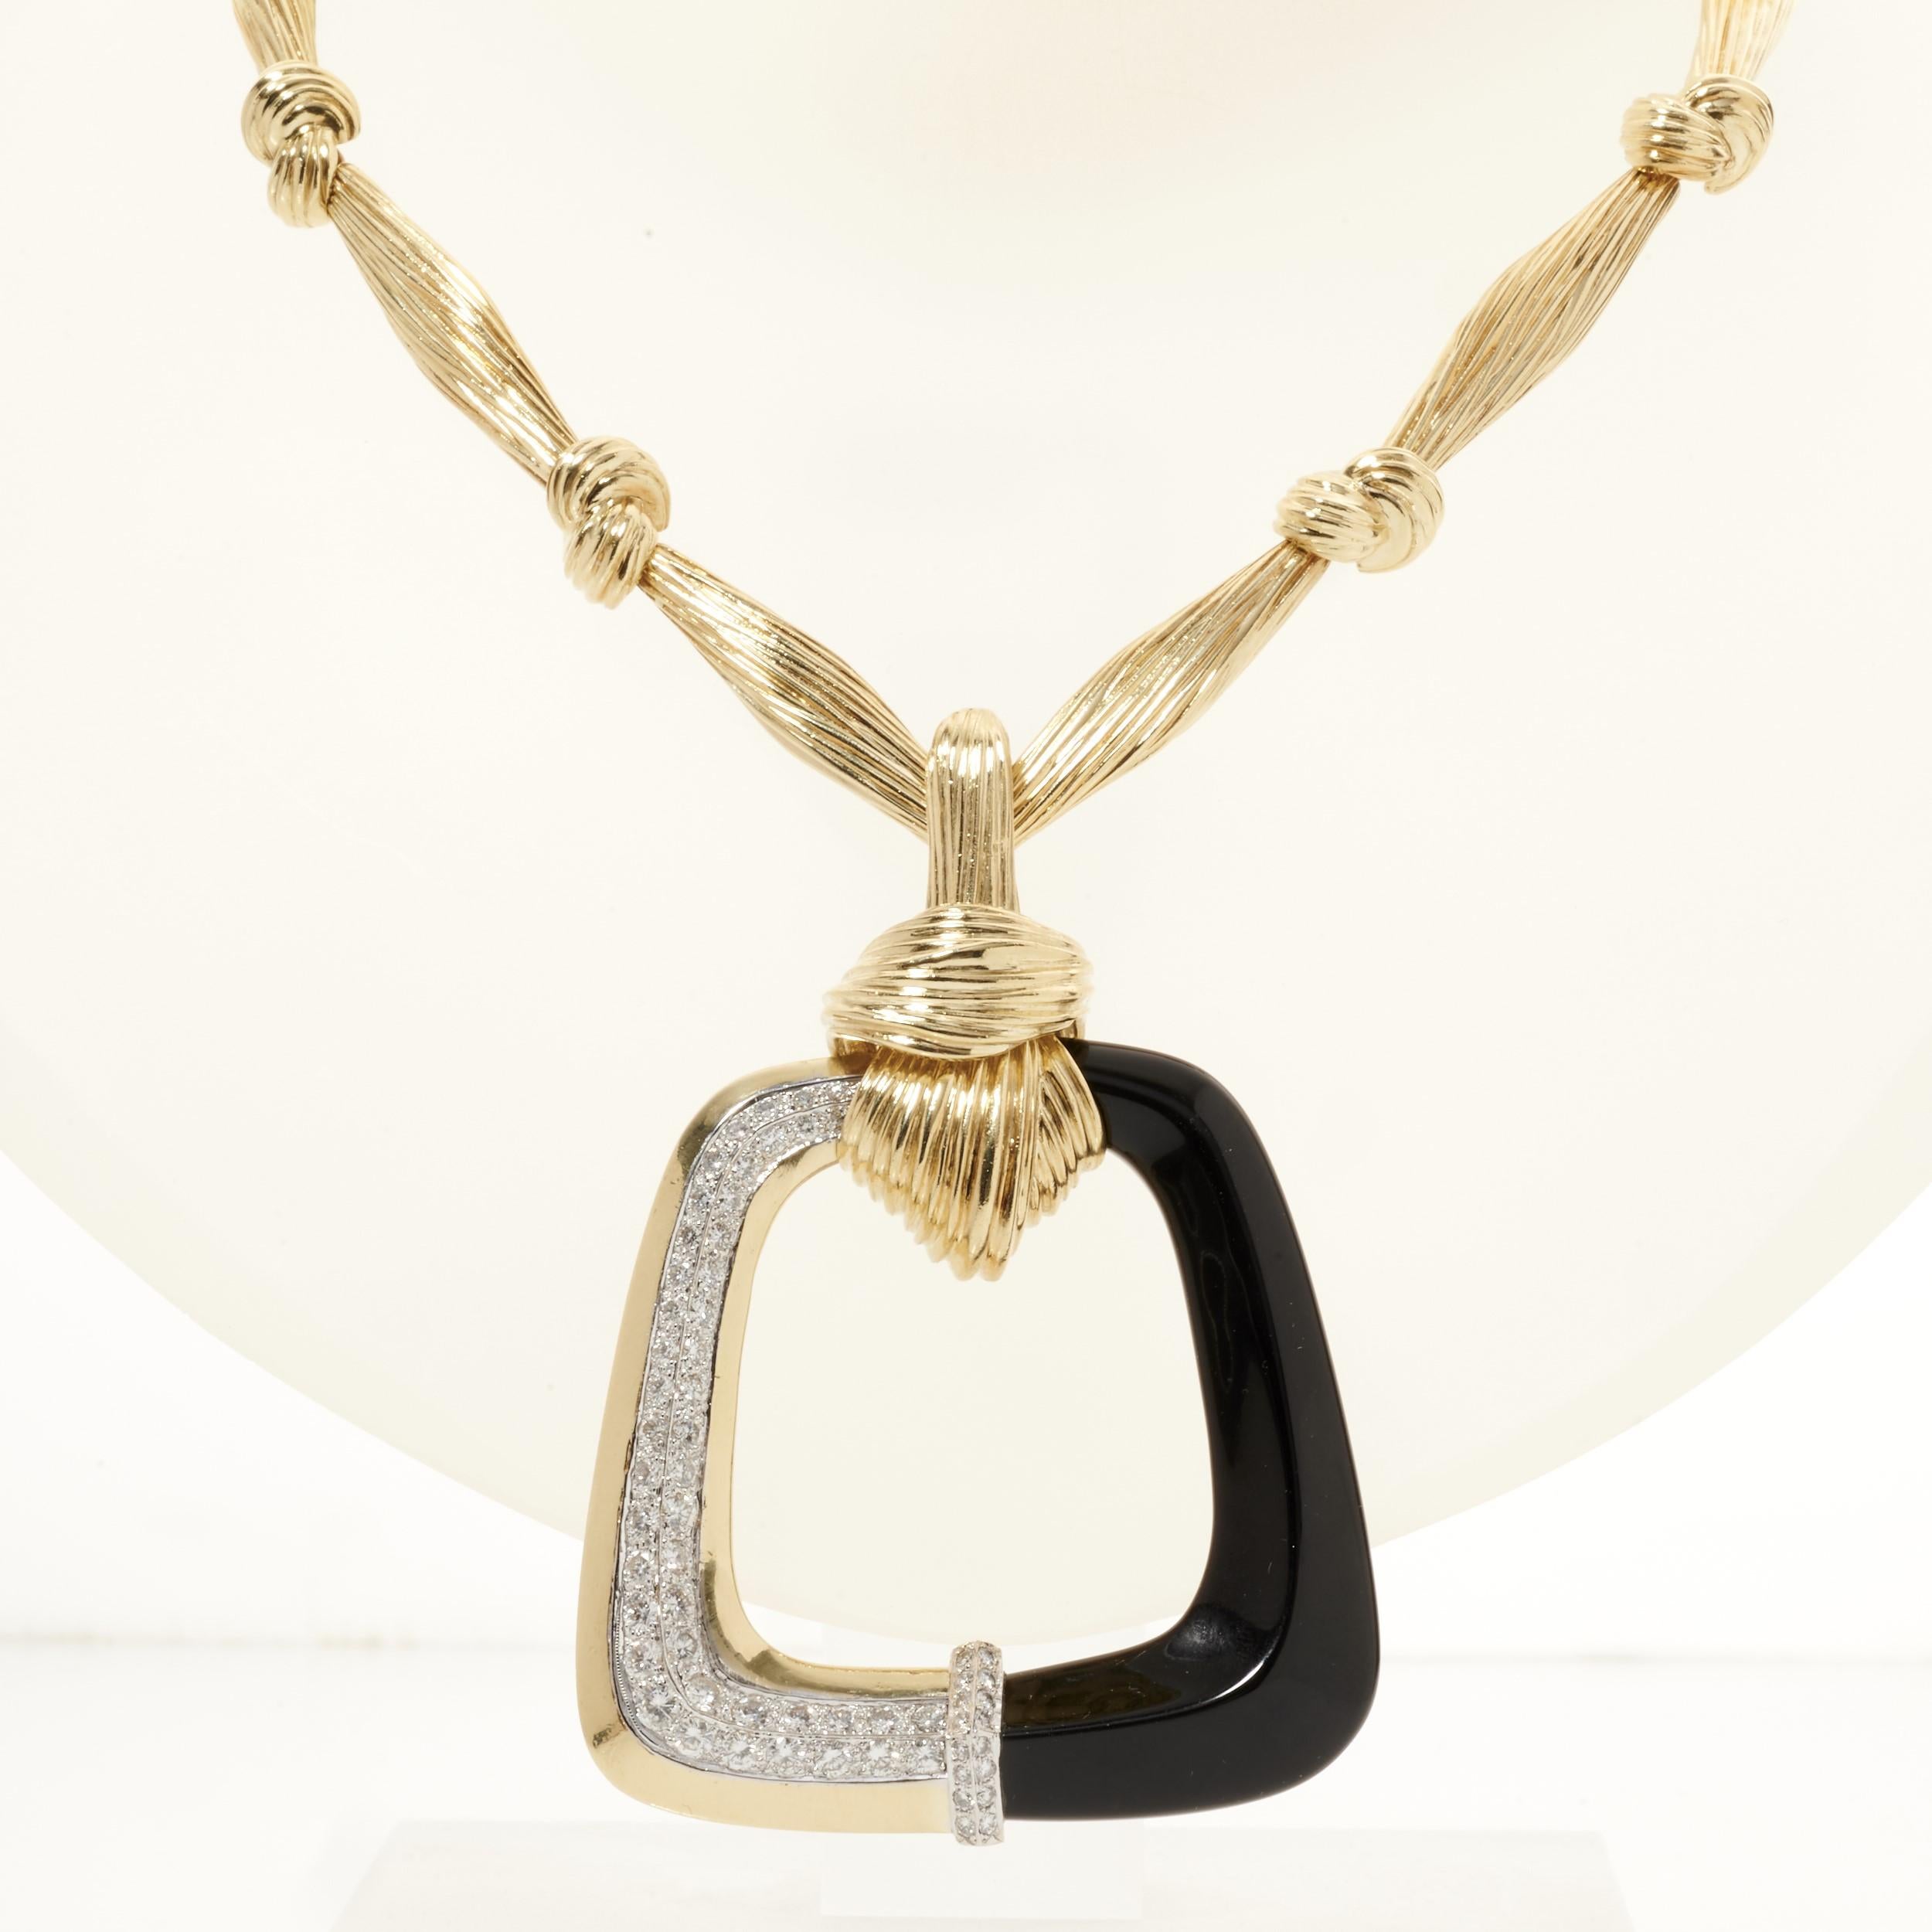 Eine atemberaubende La Triomphe-Goldkette mit einem offenen quadratischen Anhänger, der mit einem faszinierenden schwarzen Onyx und funkelnden Diamanten verziert ist. 

Der Anhänger ist aus 18 Karat Gelbgold, schwarzem Onyx und 62 runden Diamanten